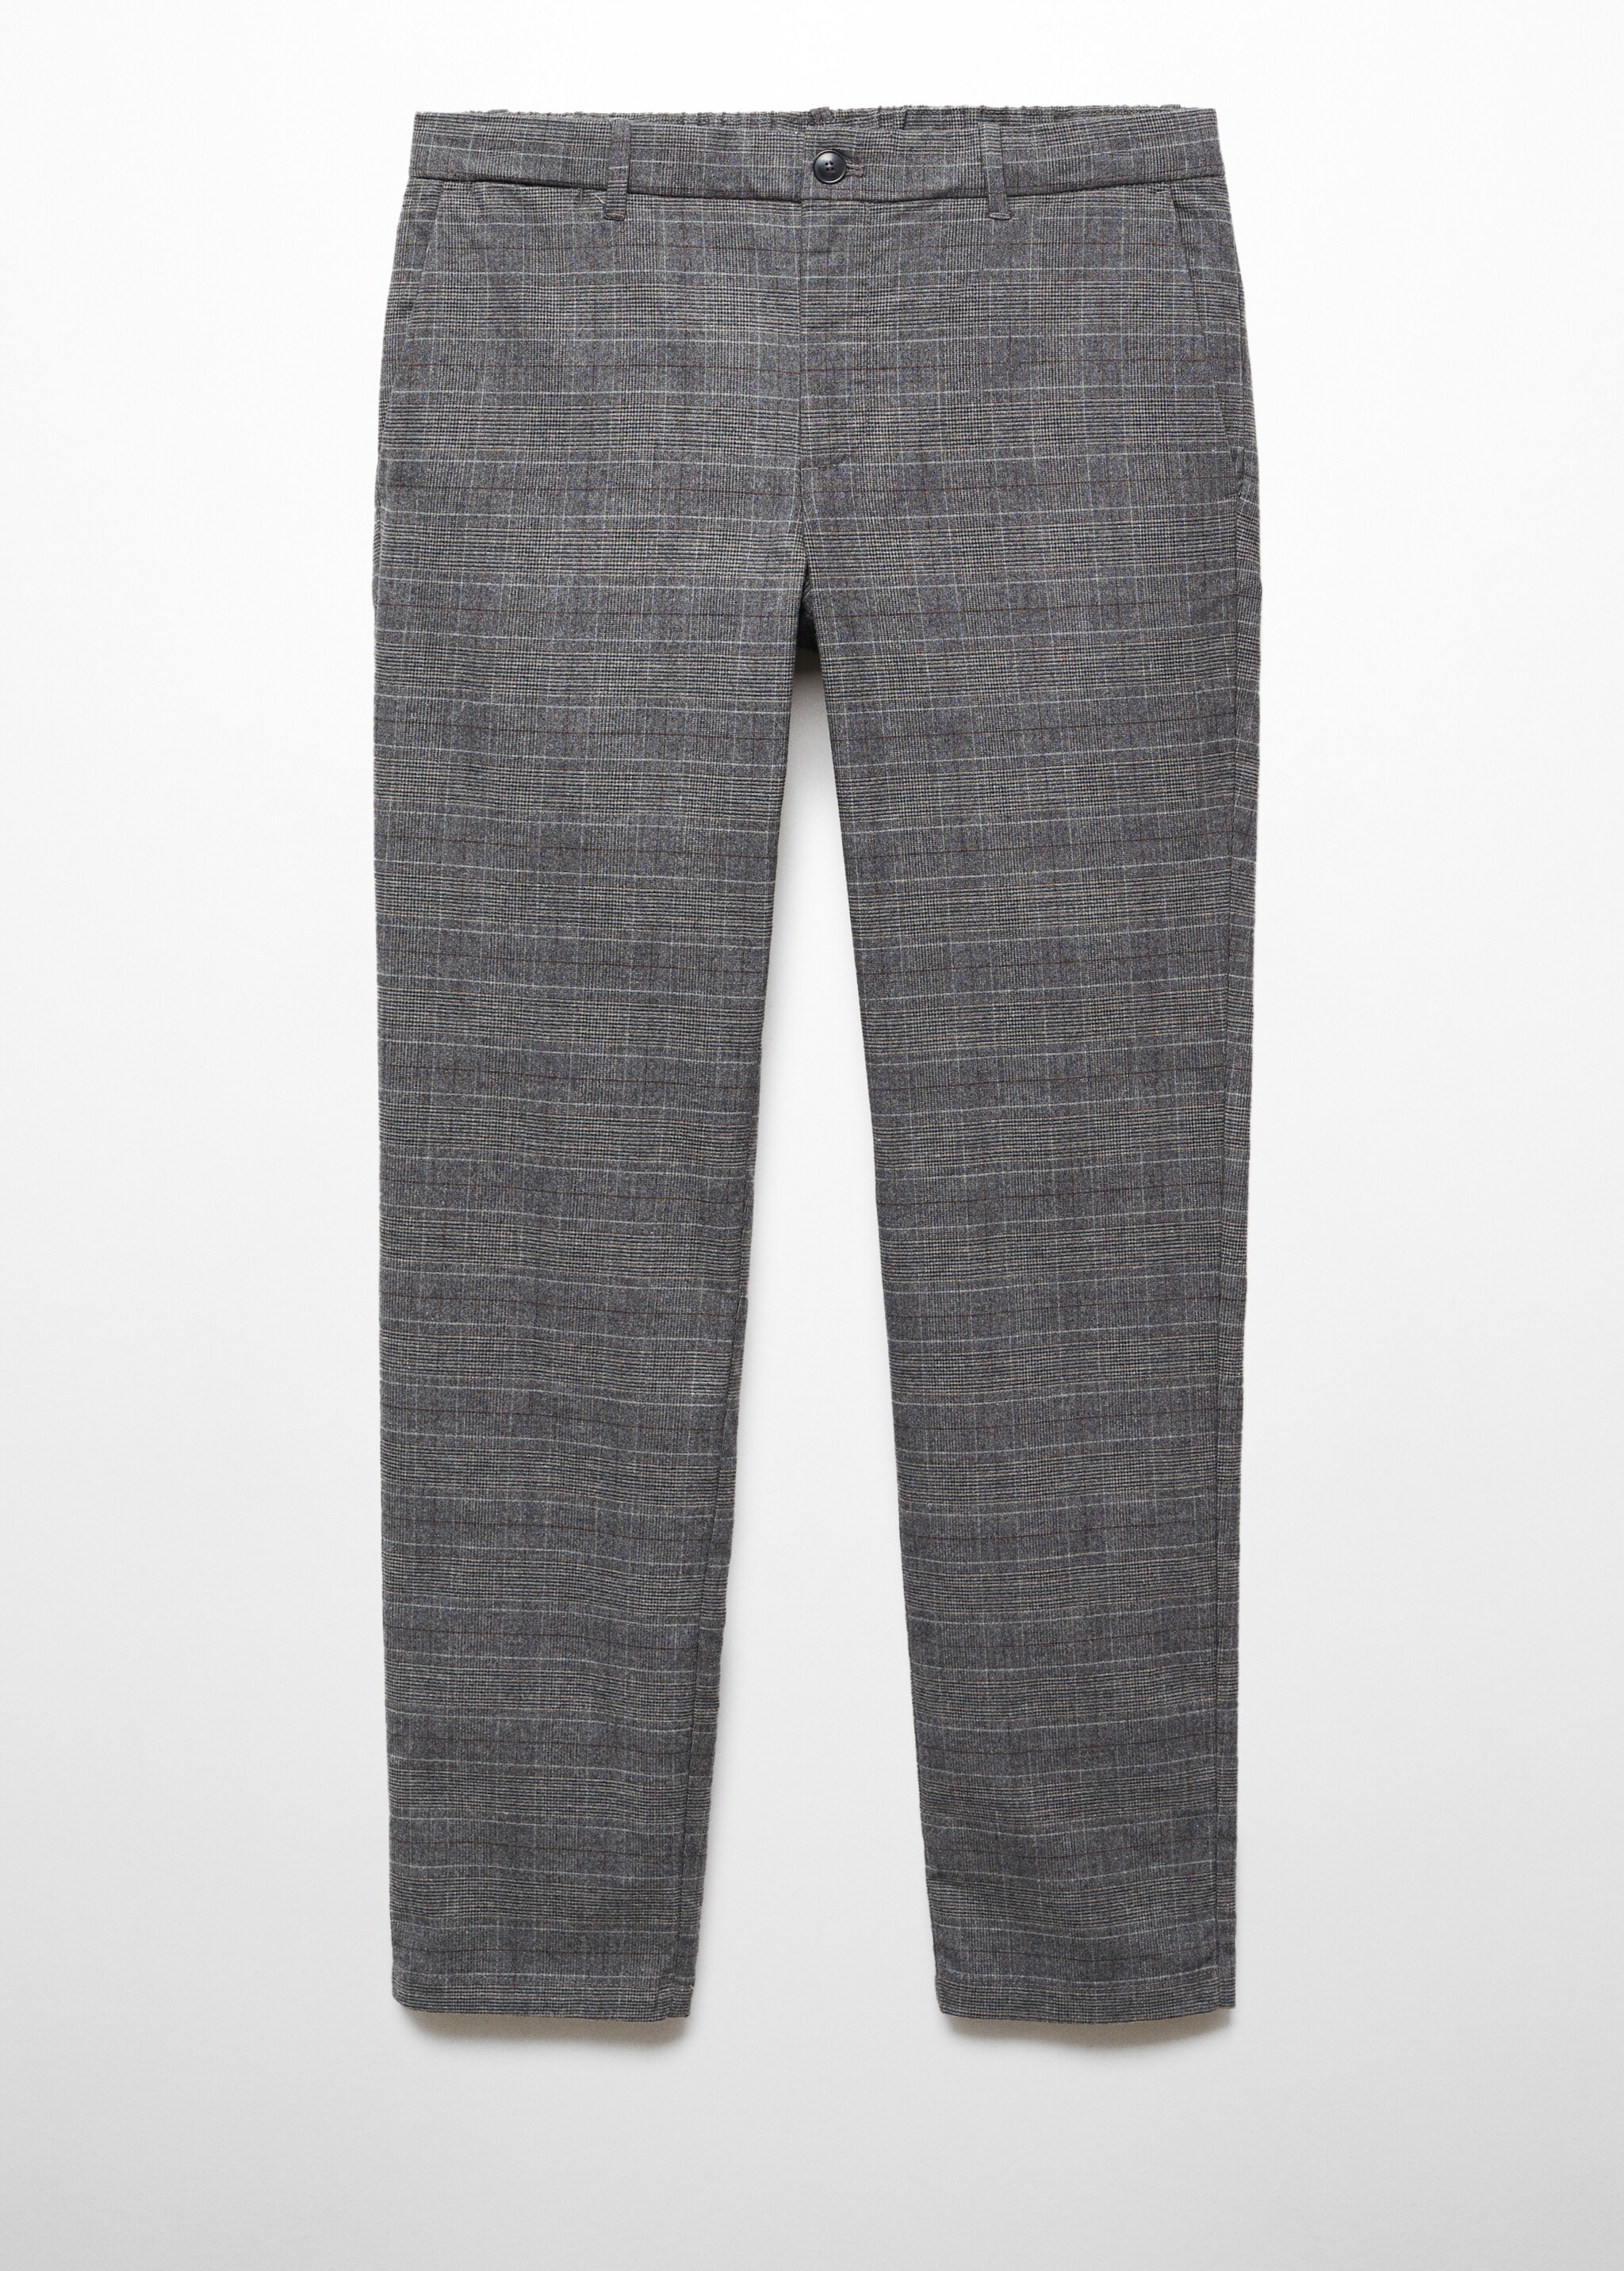 Slim-fit cotton check trousers - Изделие без модели